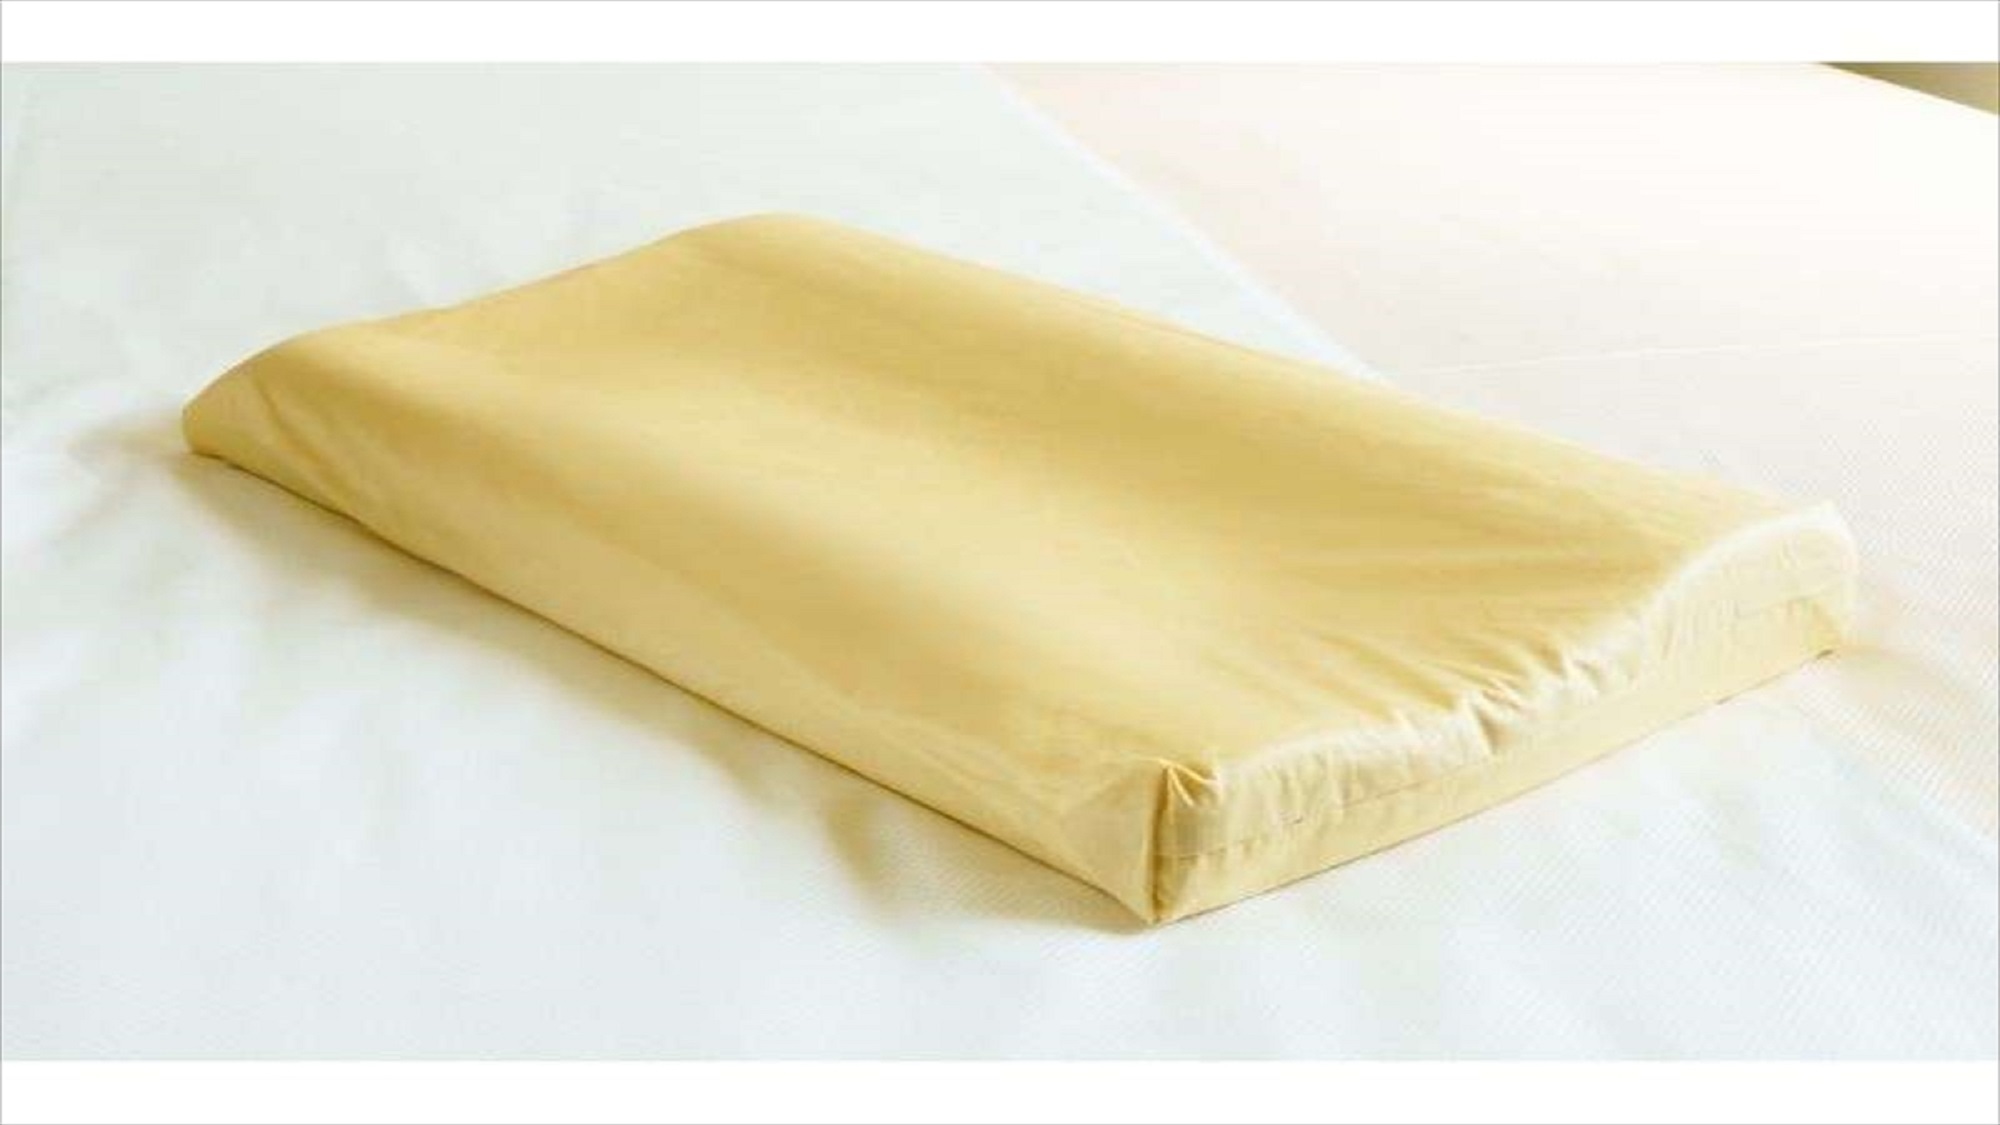 【Smart・貸出枕・数量限定】低反発黄色・・ほどよい硬さと高さです。初めての方はまずお試しください